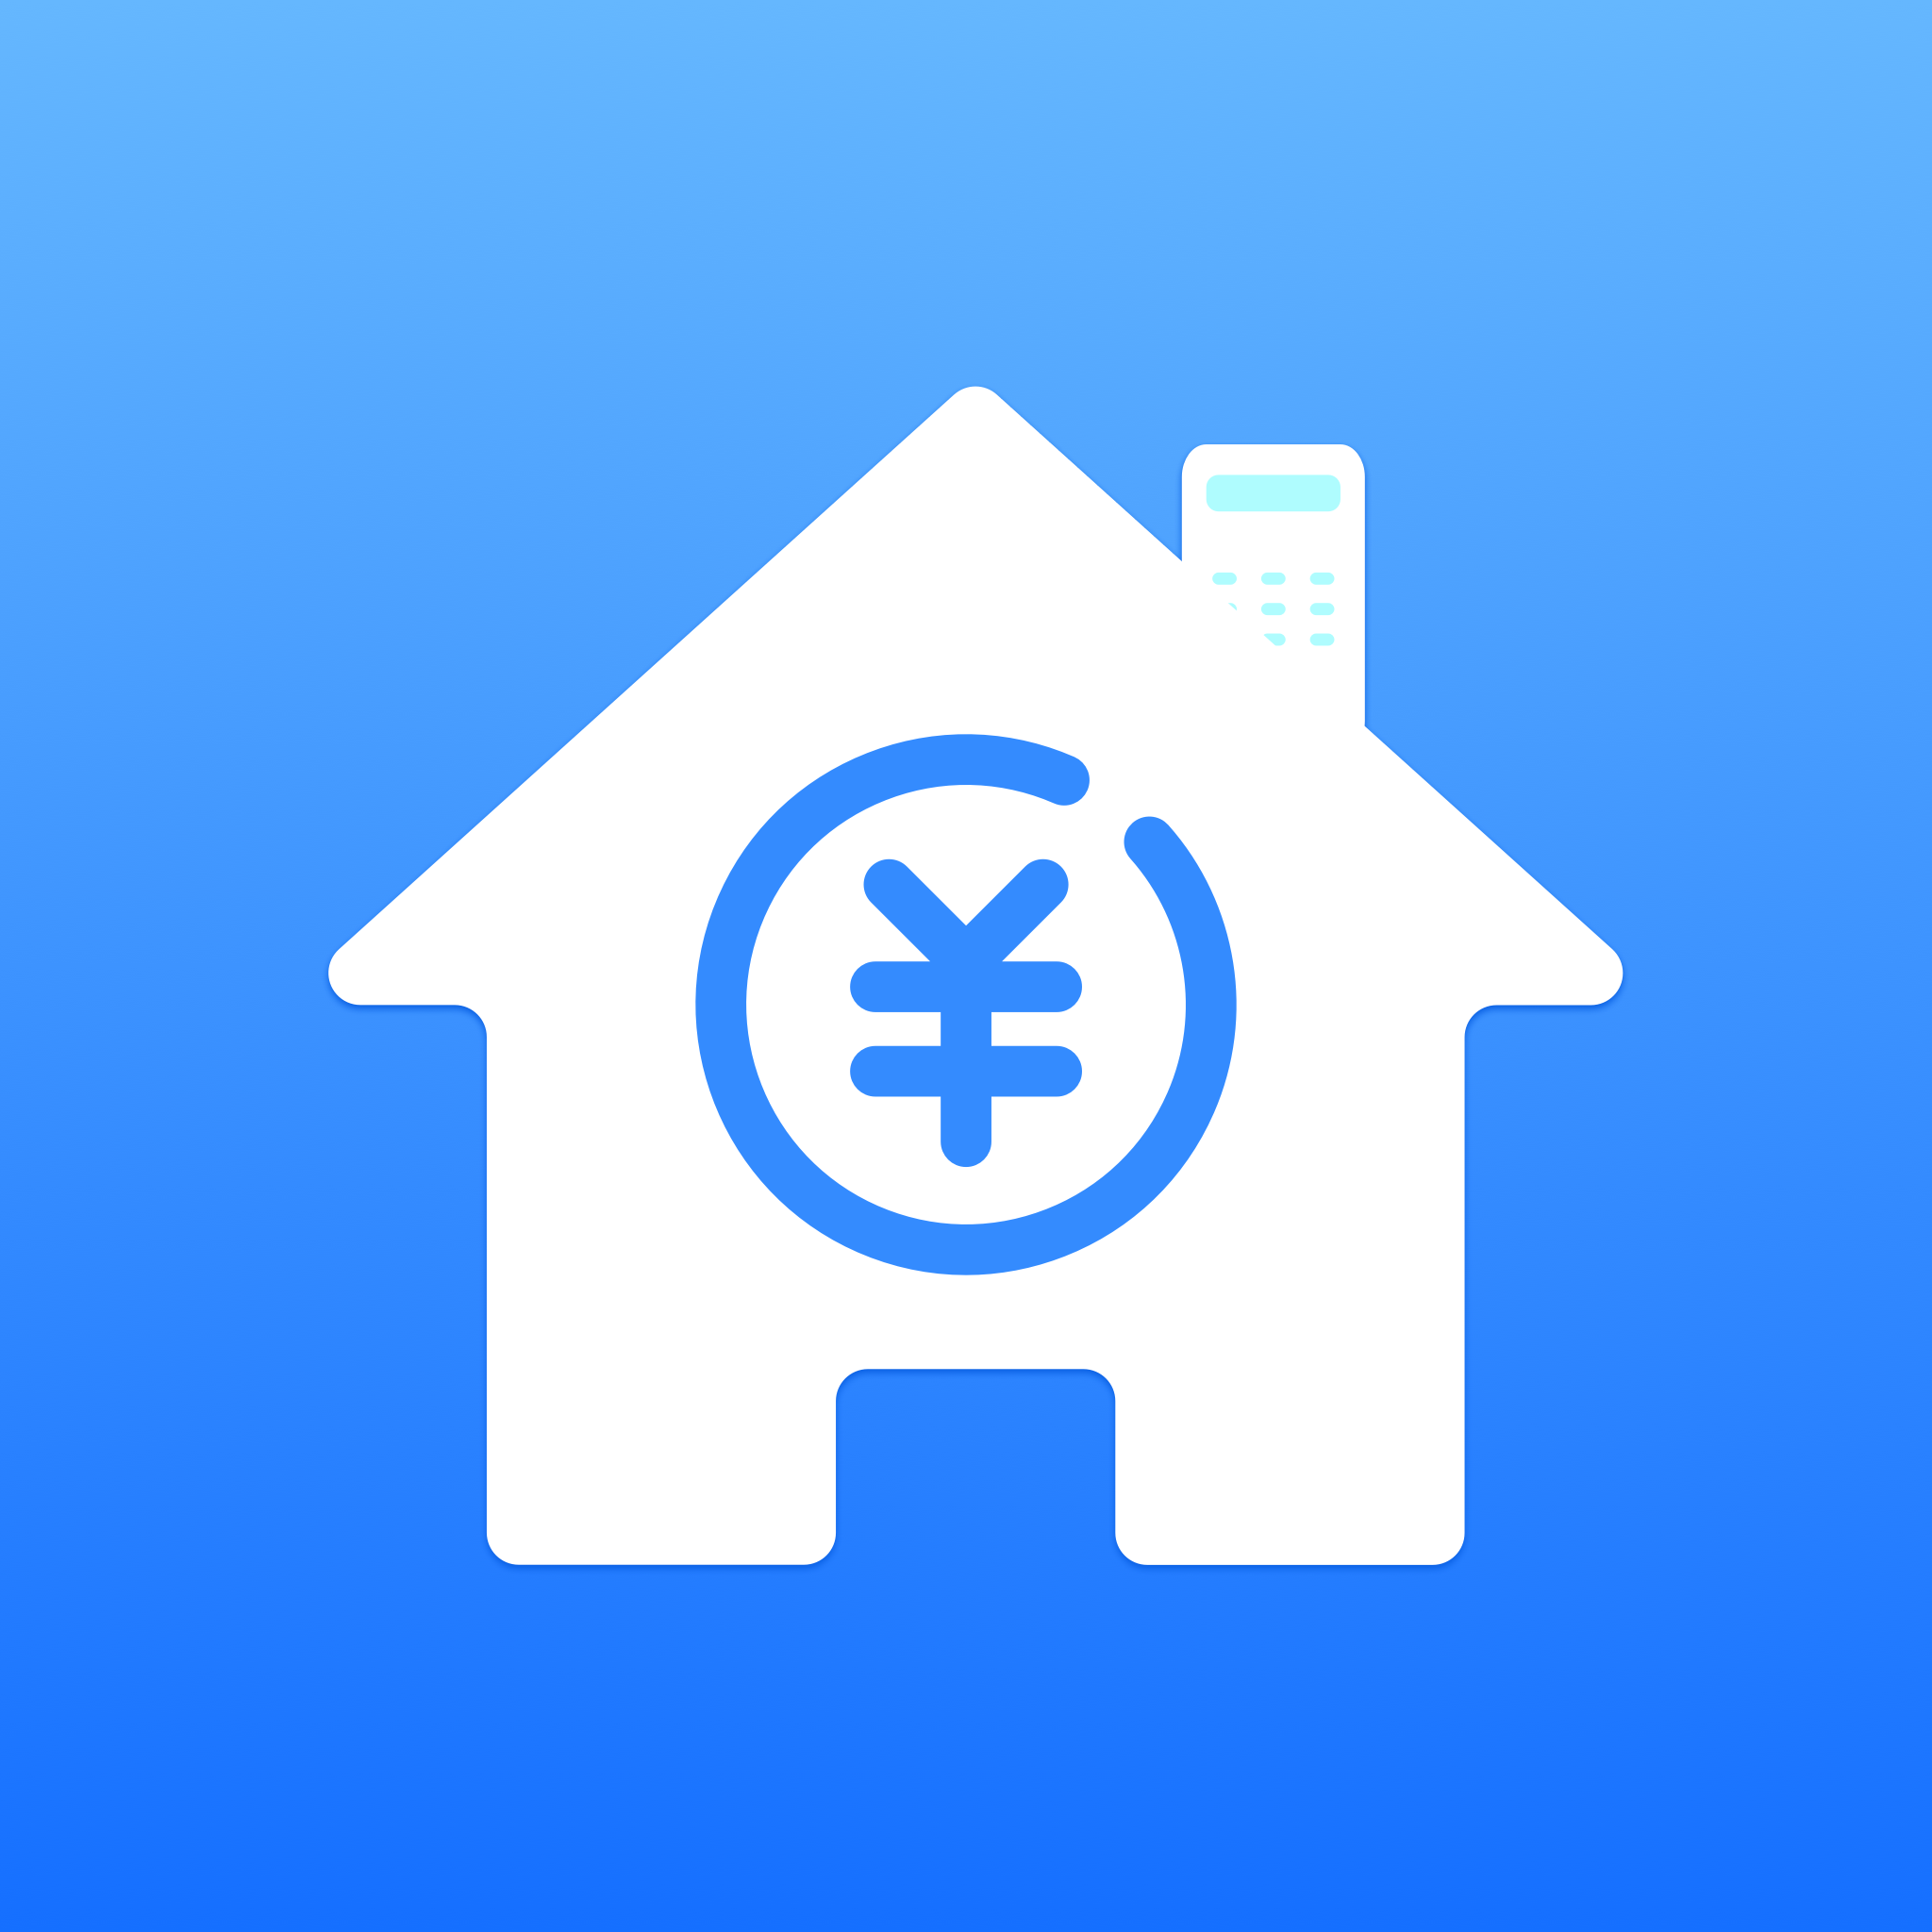 房价计算器app安卓最新版